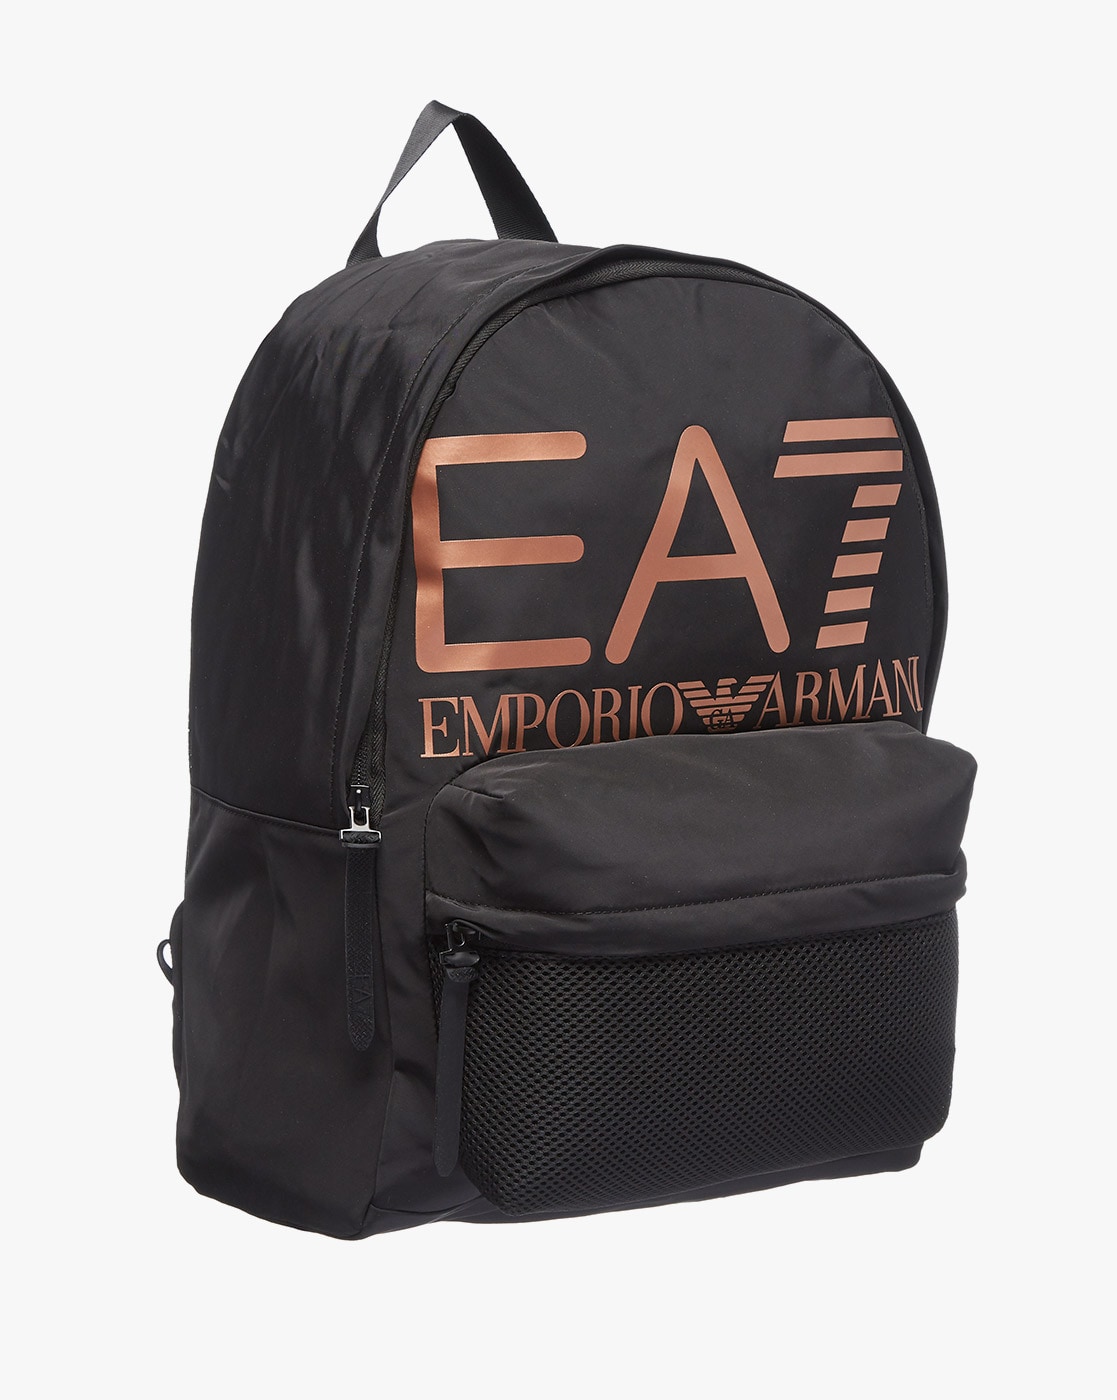 EA7 Emporio Armani logo vector free download - Brandslogo.net